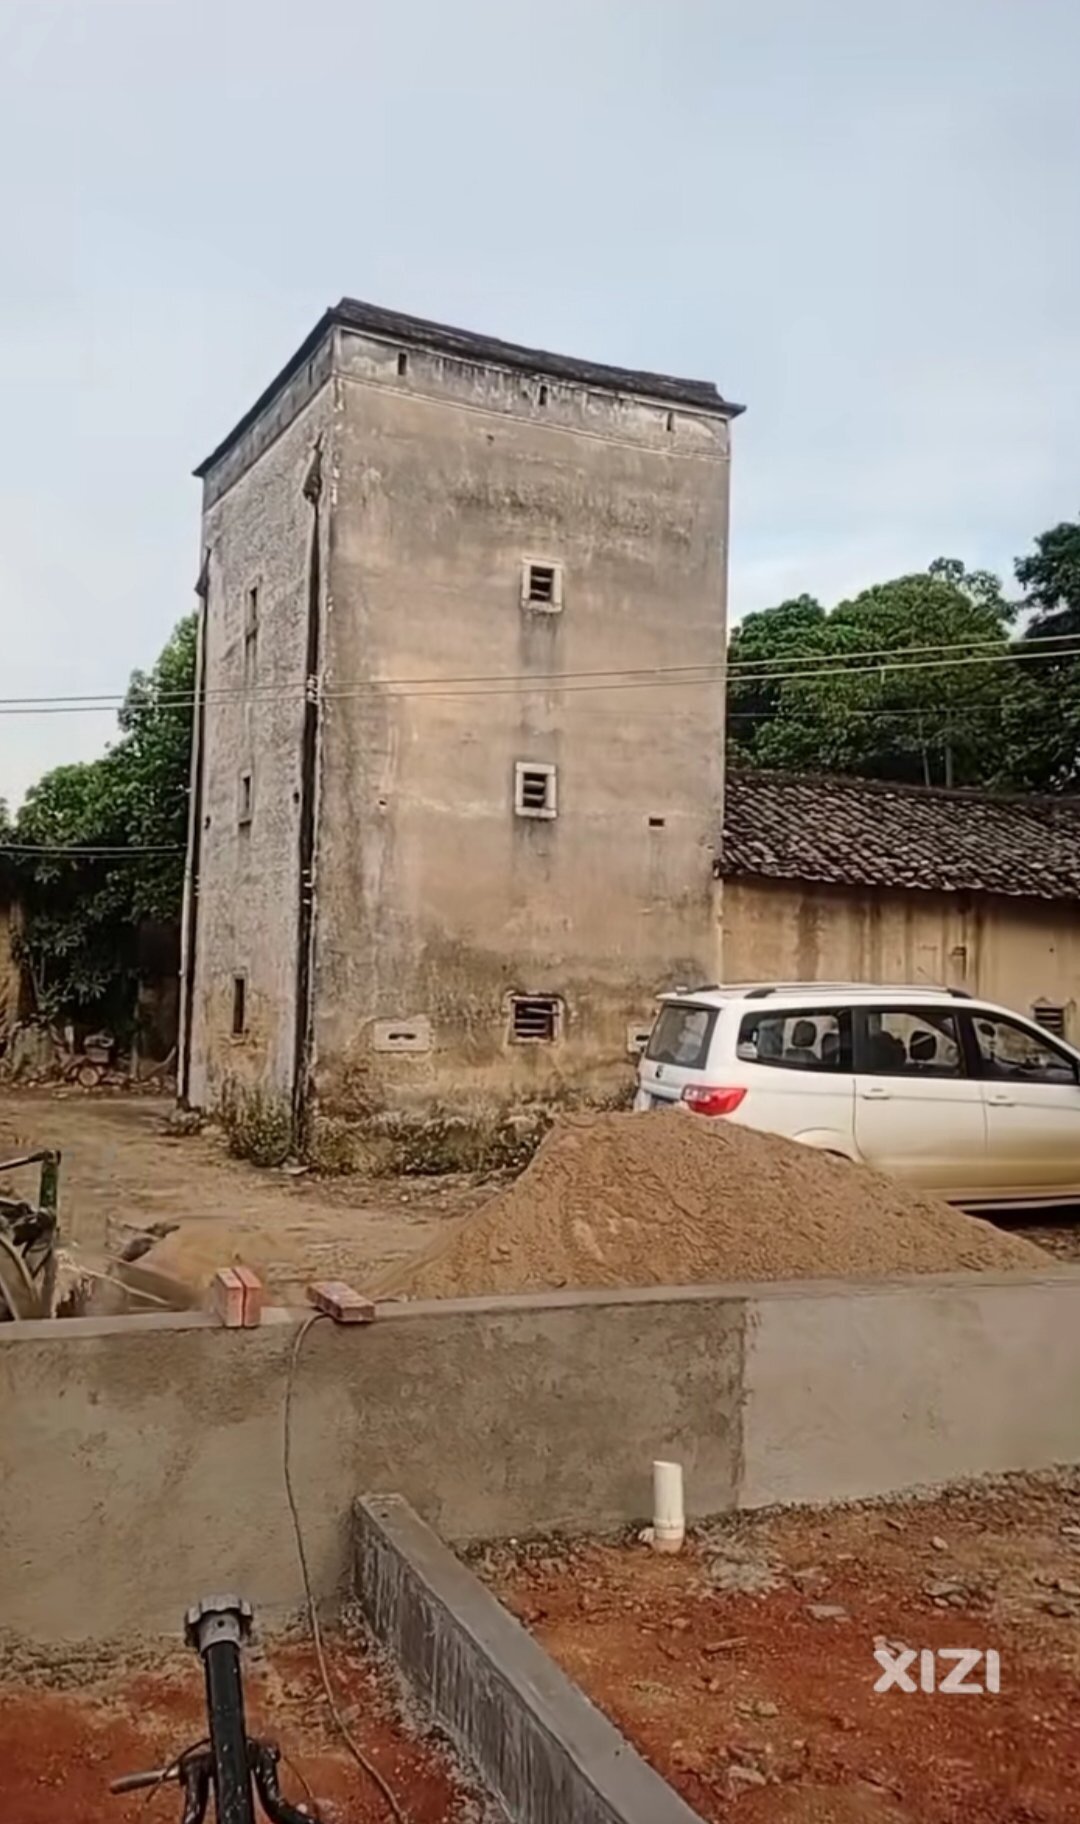 保留至今的梁化镇七星墩村民委员会李屋坝村的客家碉楼